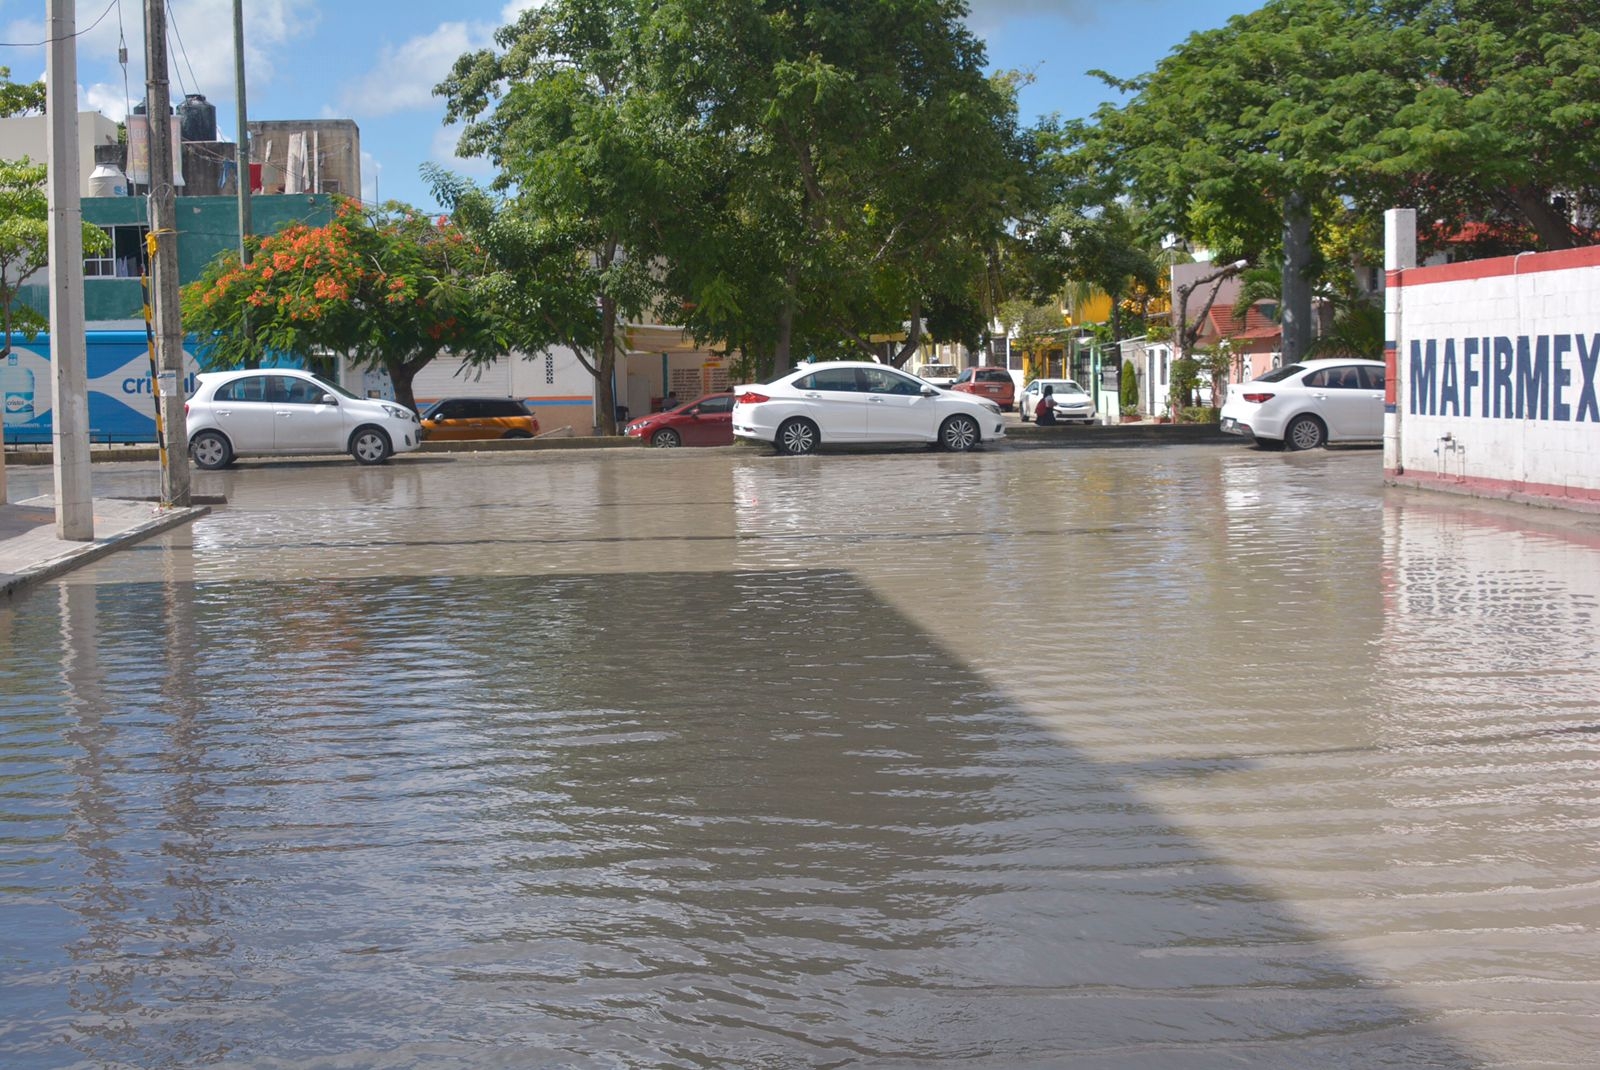 Más de una docena de baches se encuentran abajo del agua en esta calle inundada